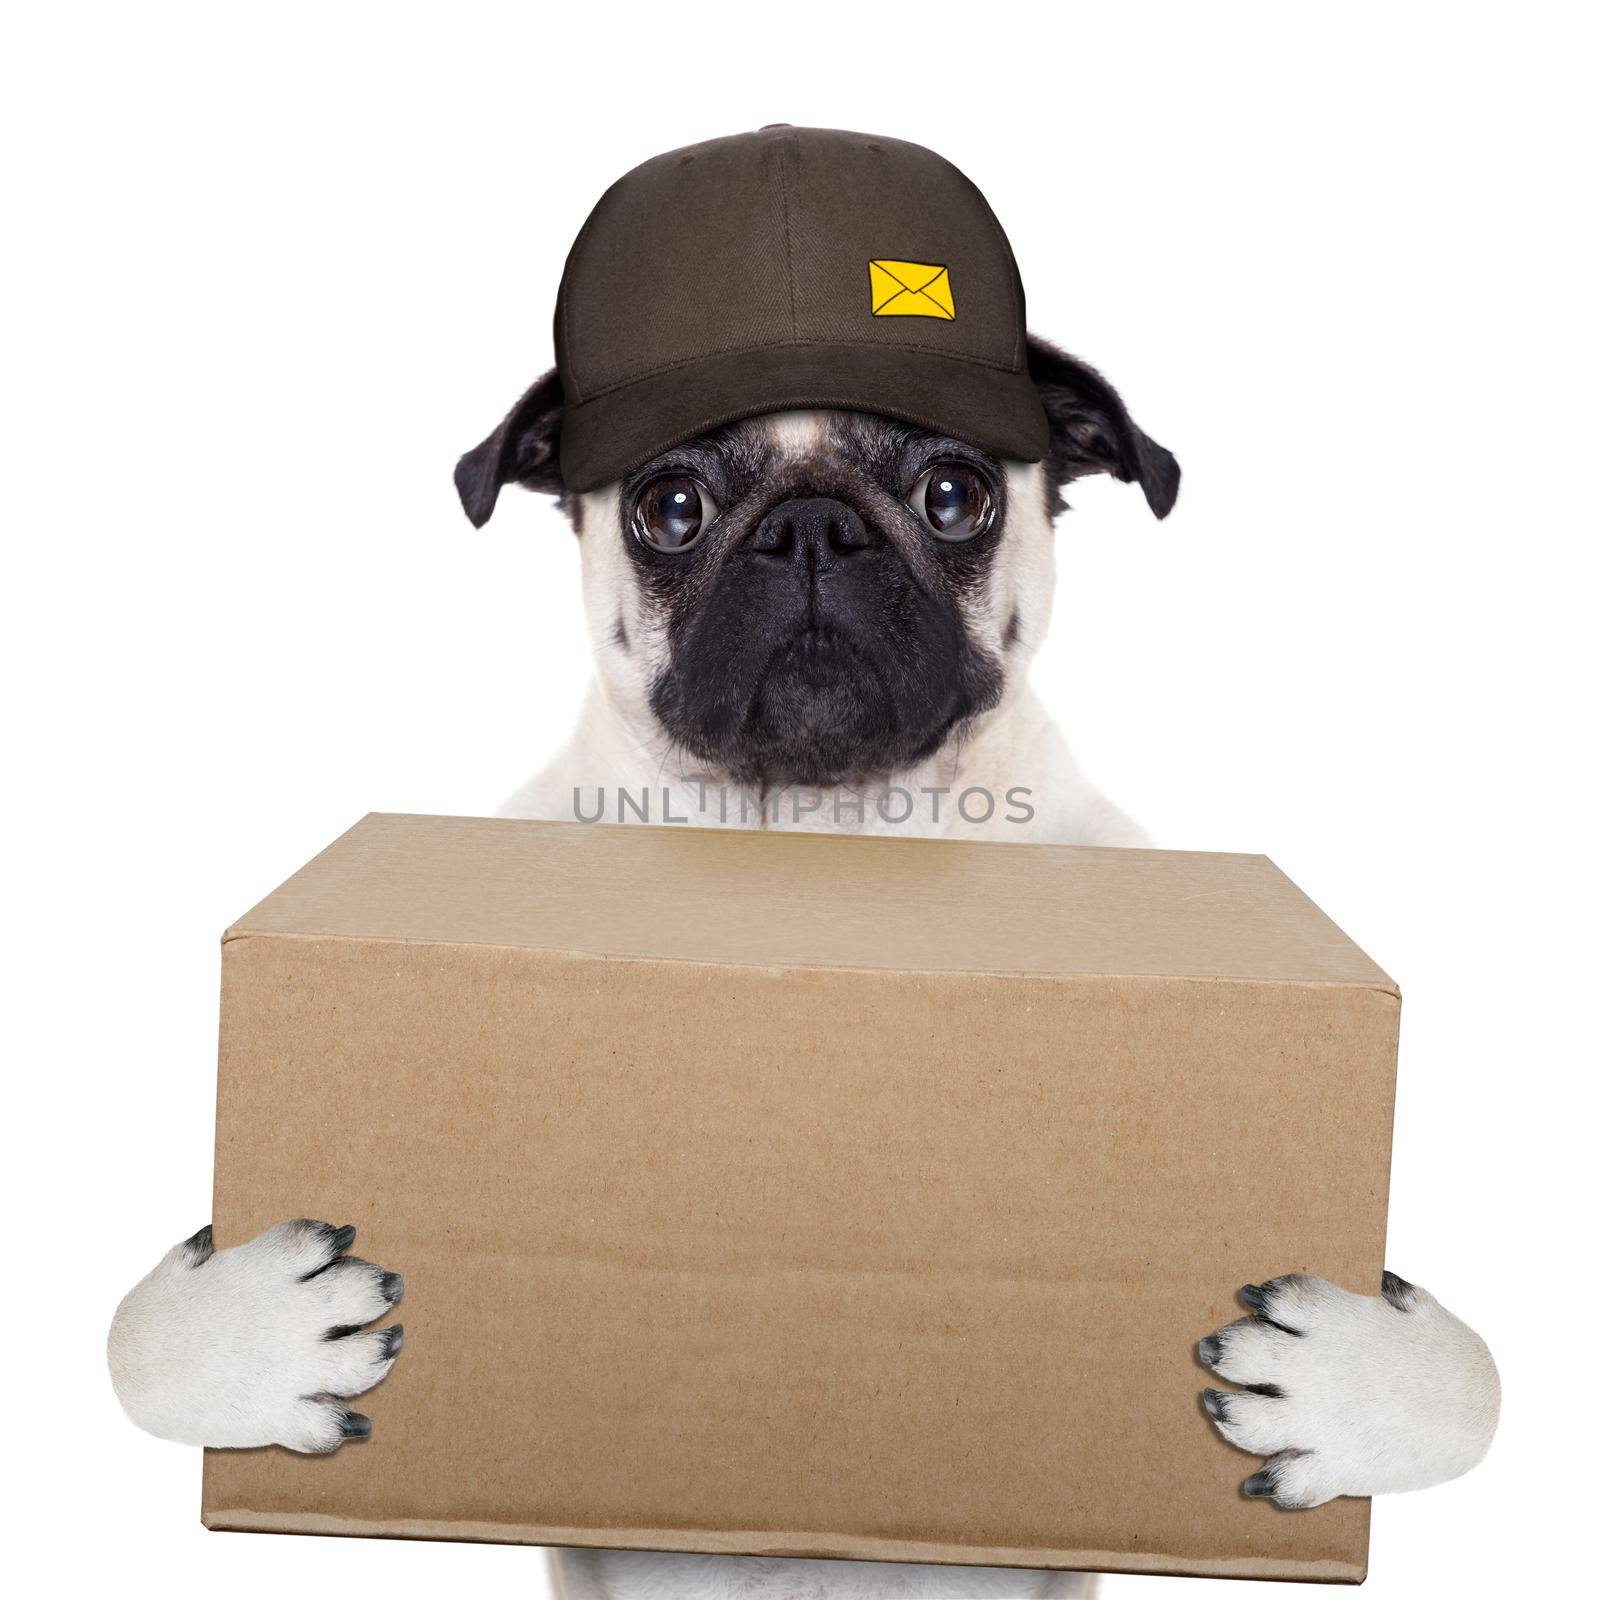 postman pug  dog delivering a big brown package